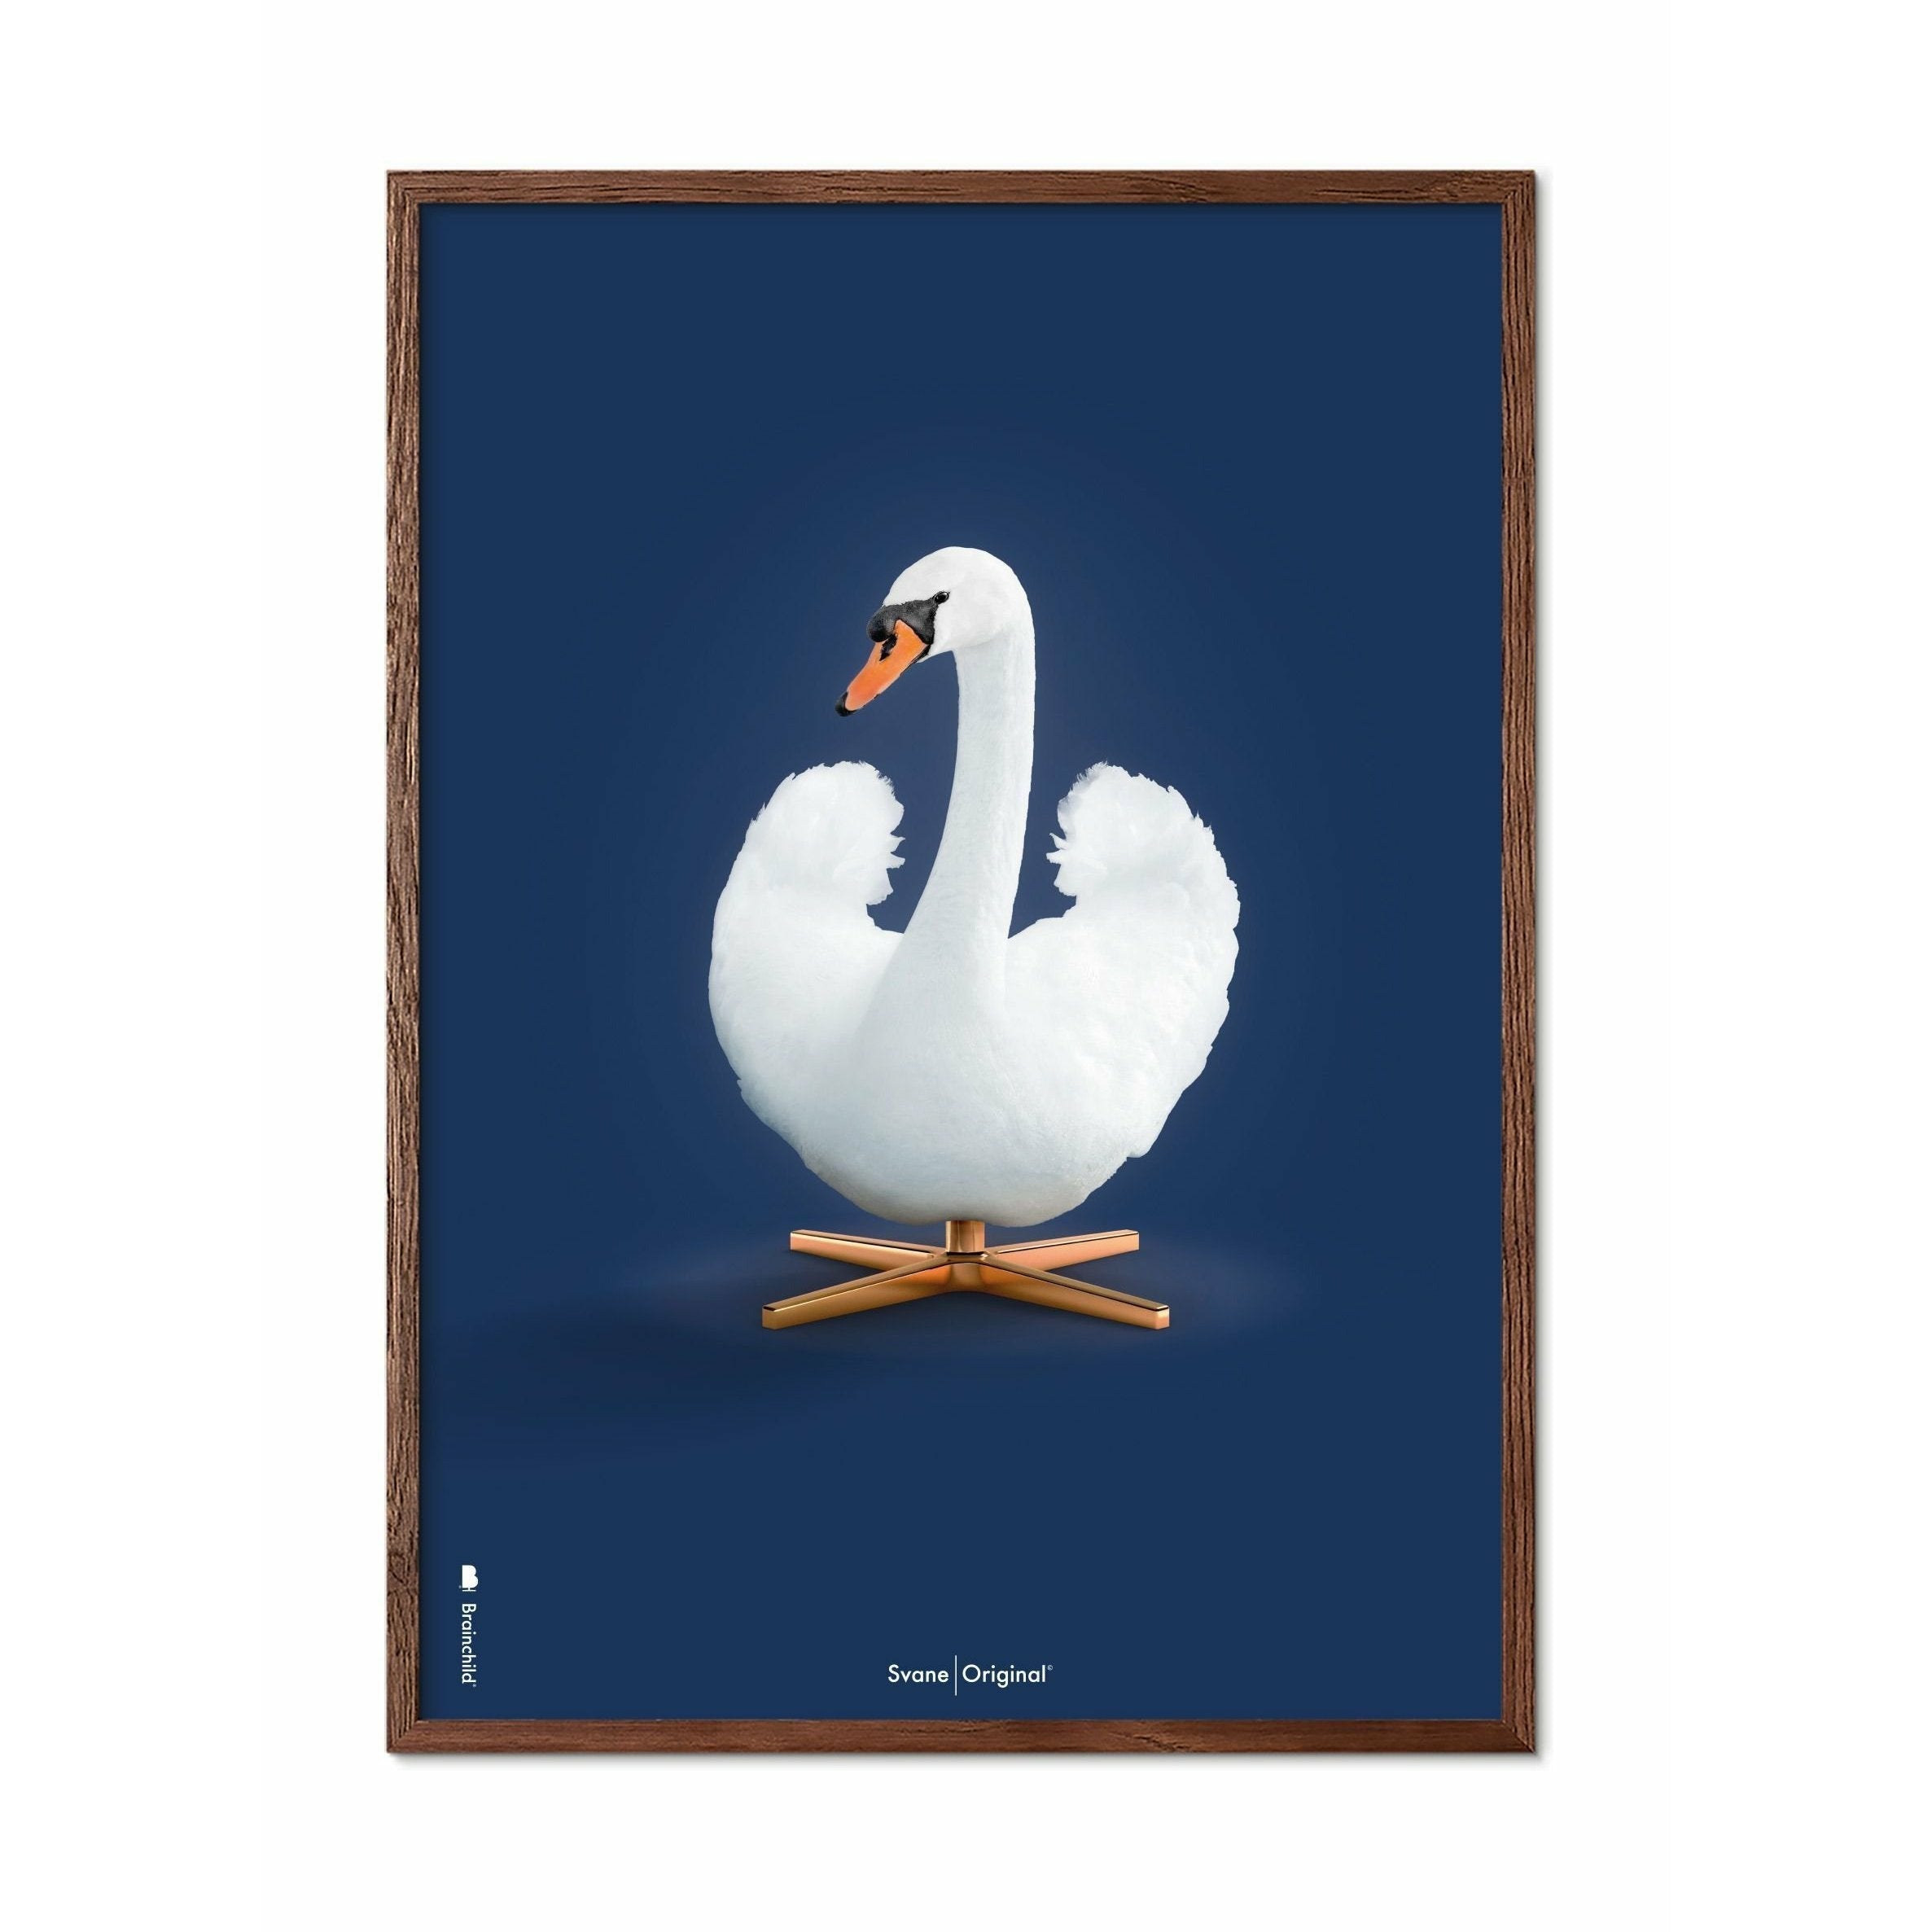 Póster clásico de Swan, marco de madera oscura A5, fondo azul oscuro